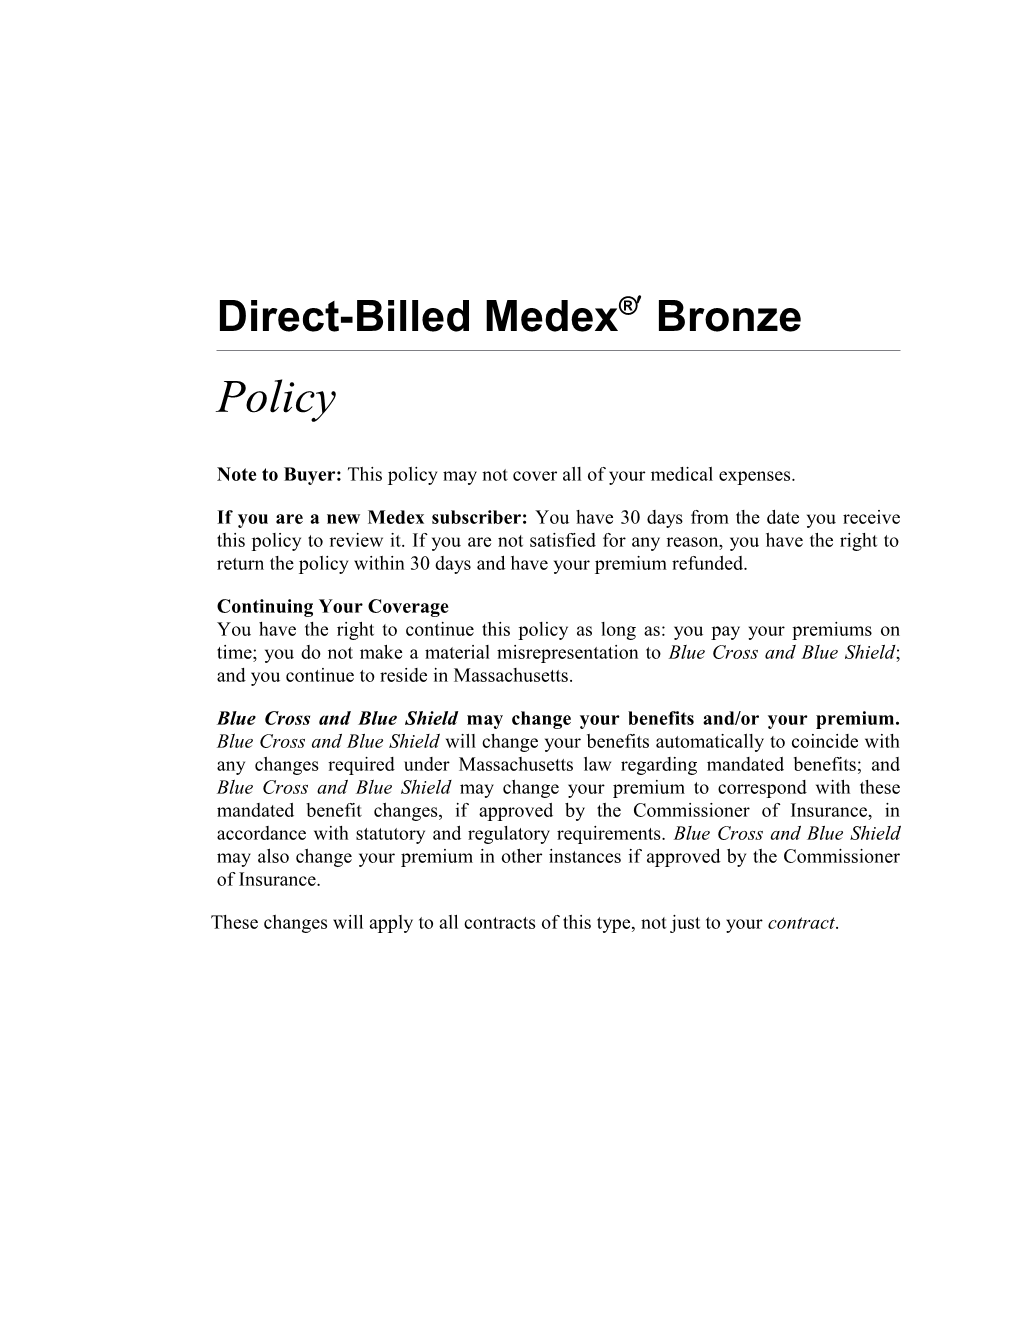 Direct-Billed Medex Bronze